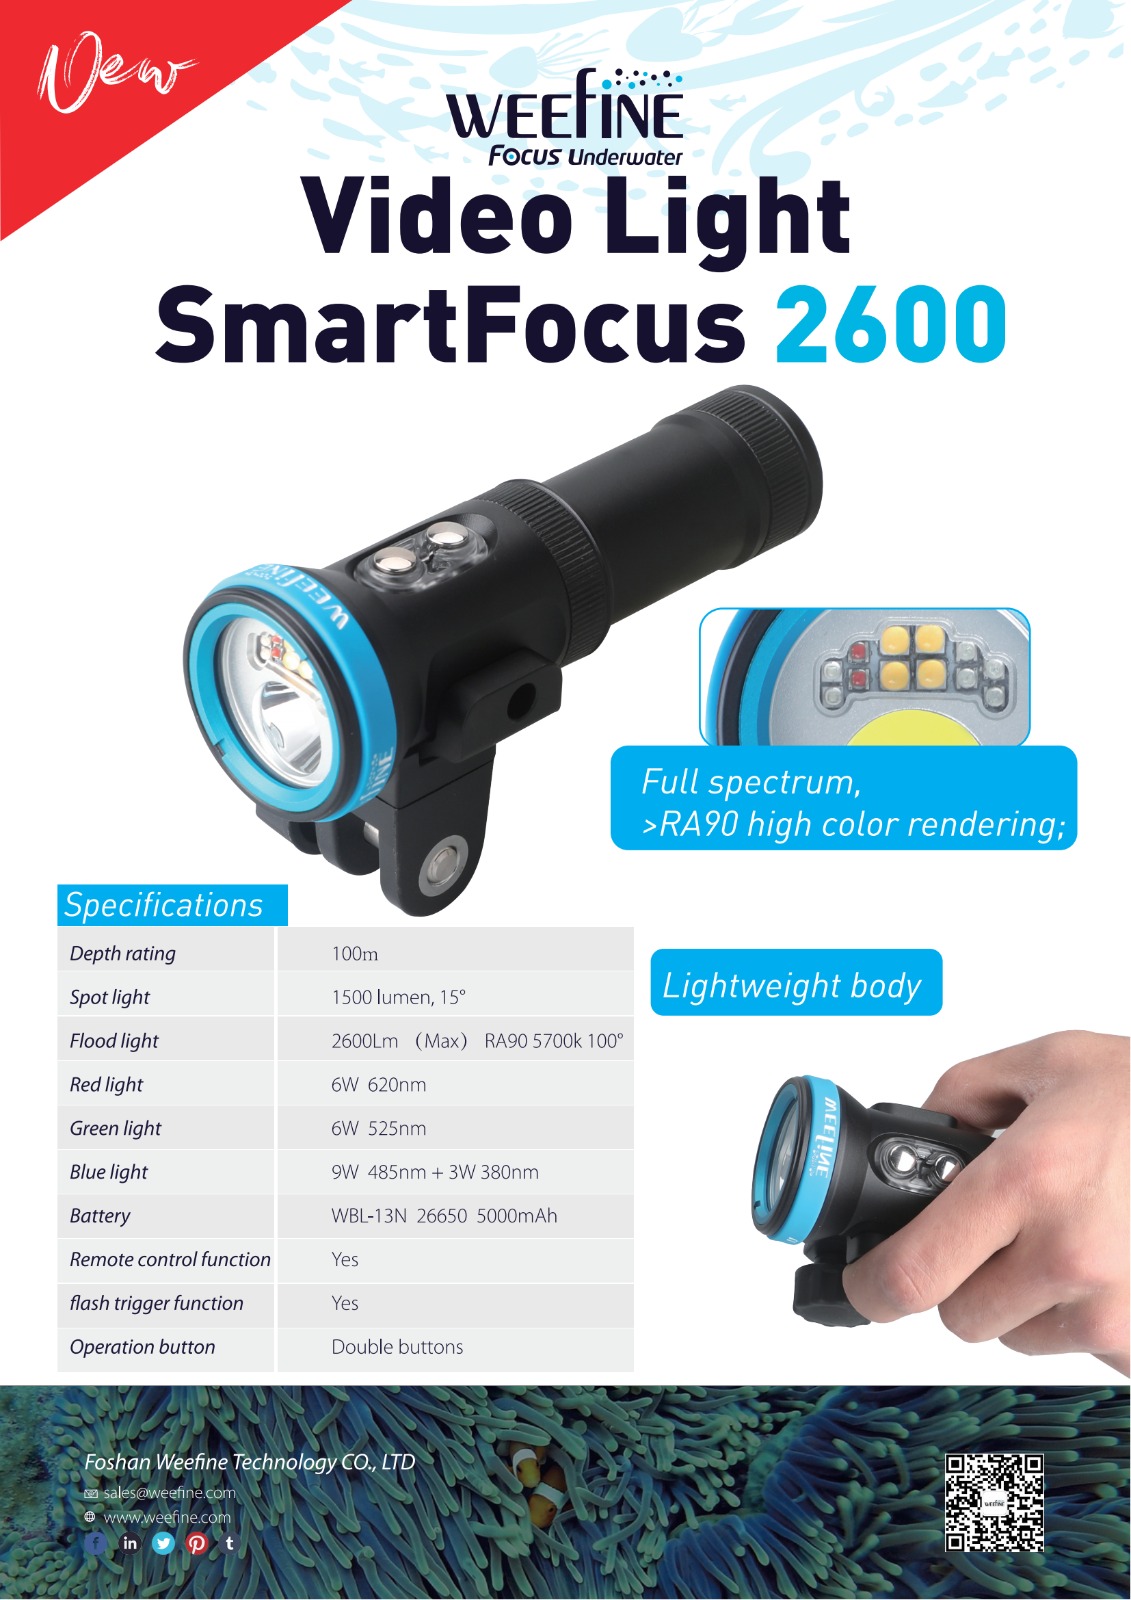 Smart focus 2600 Underwater Video Light